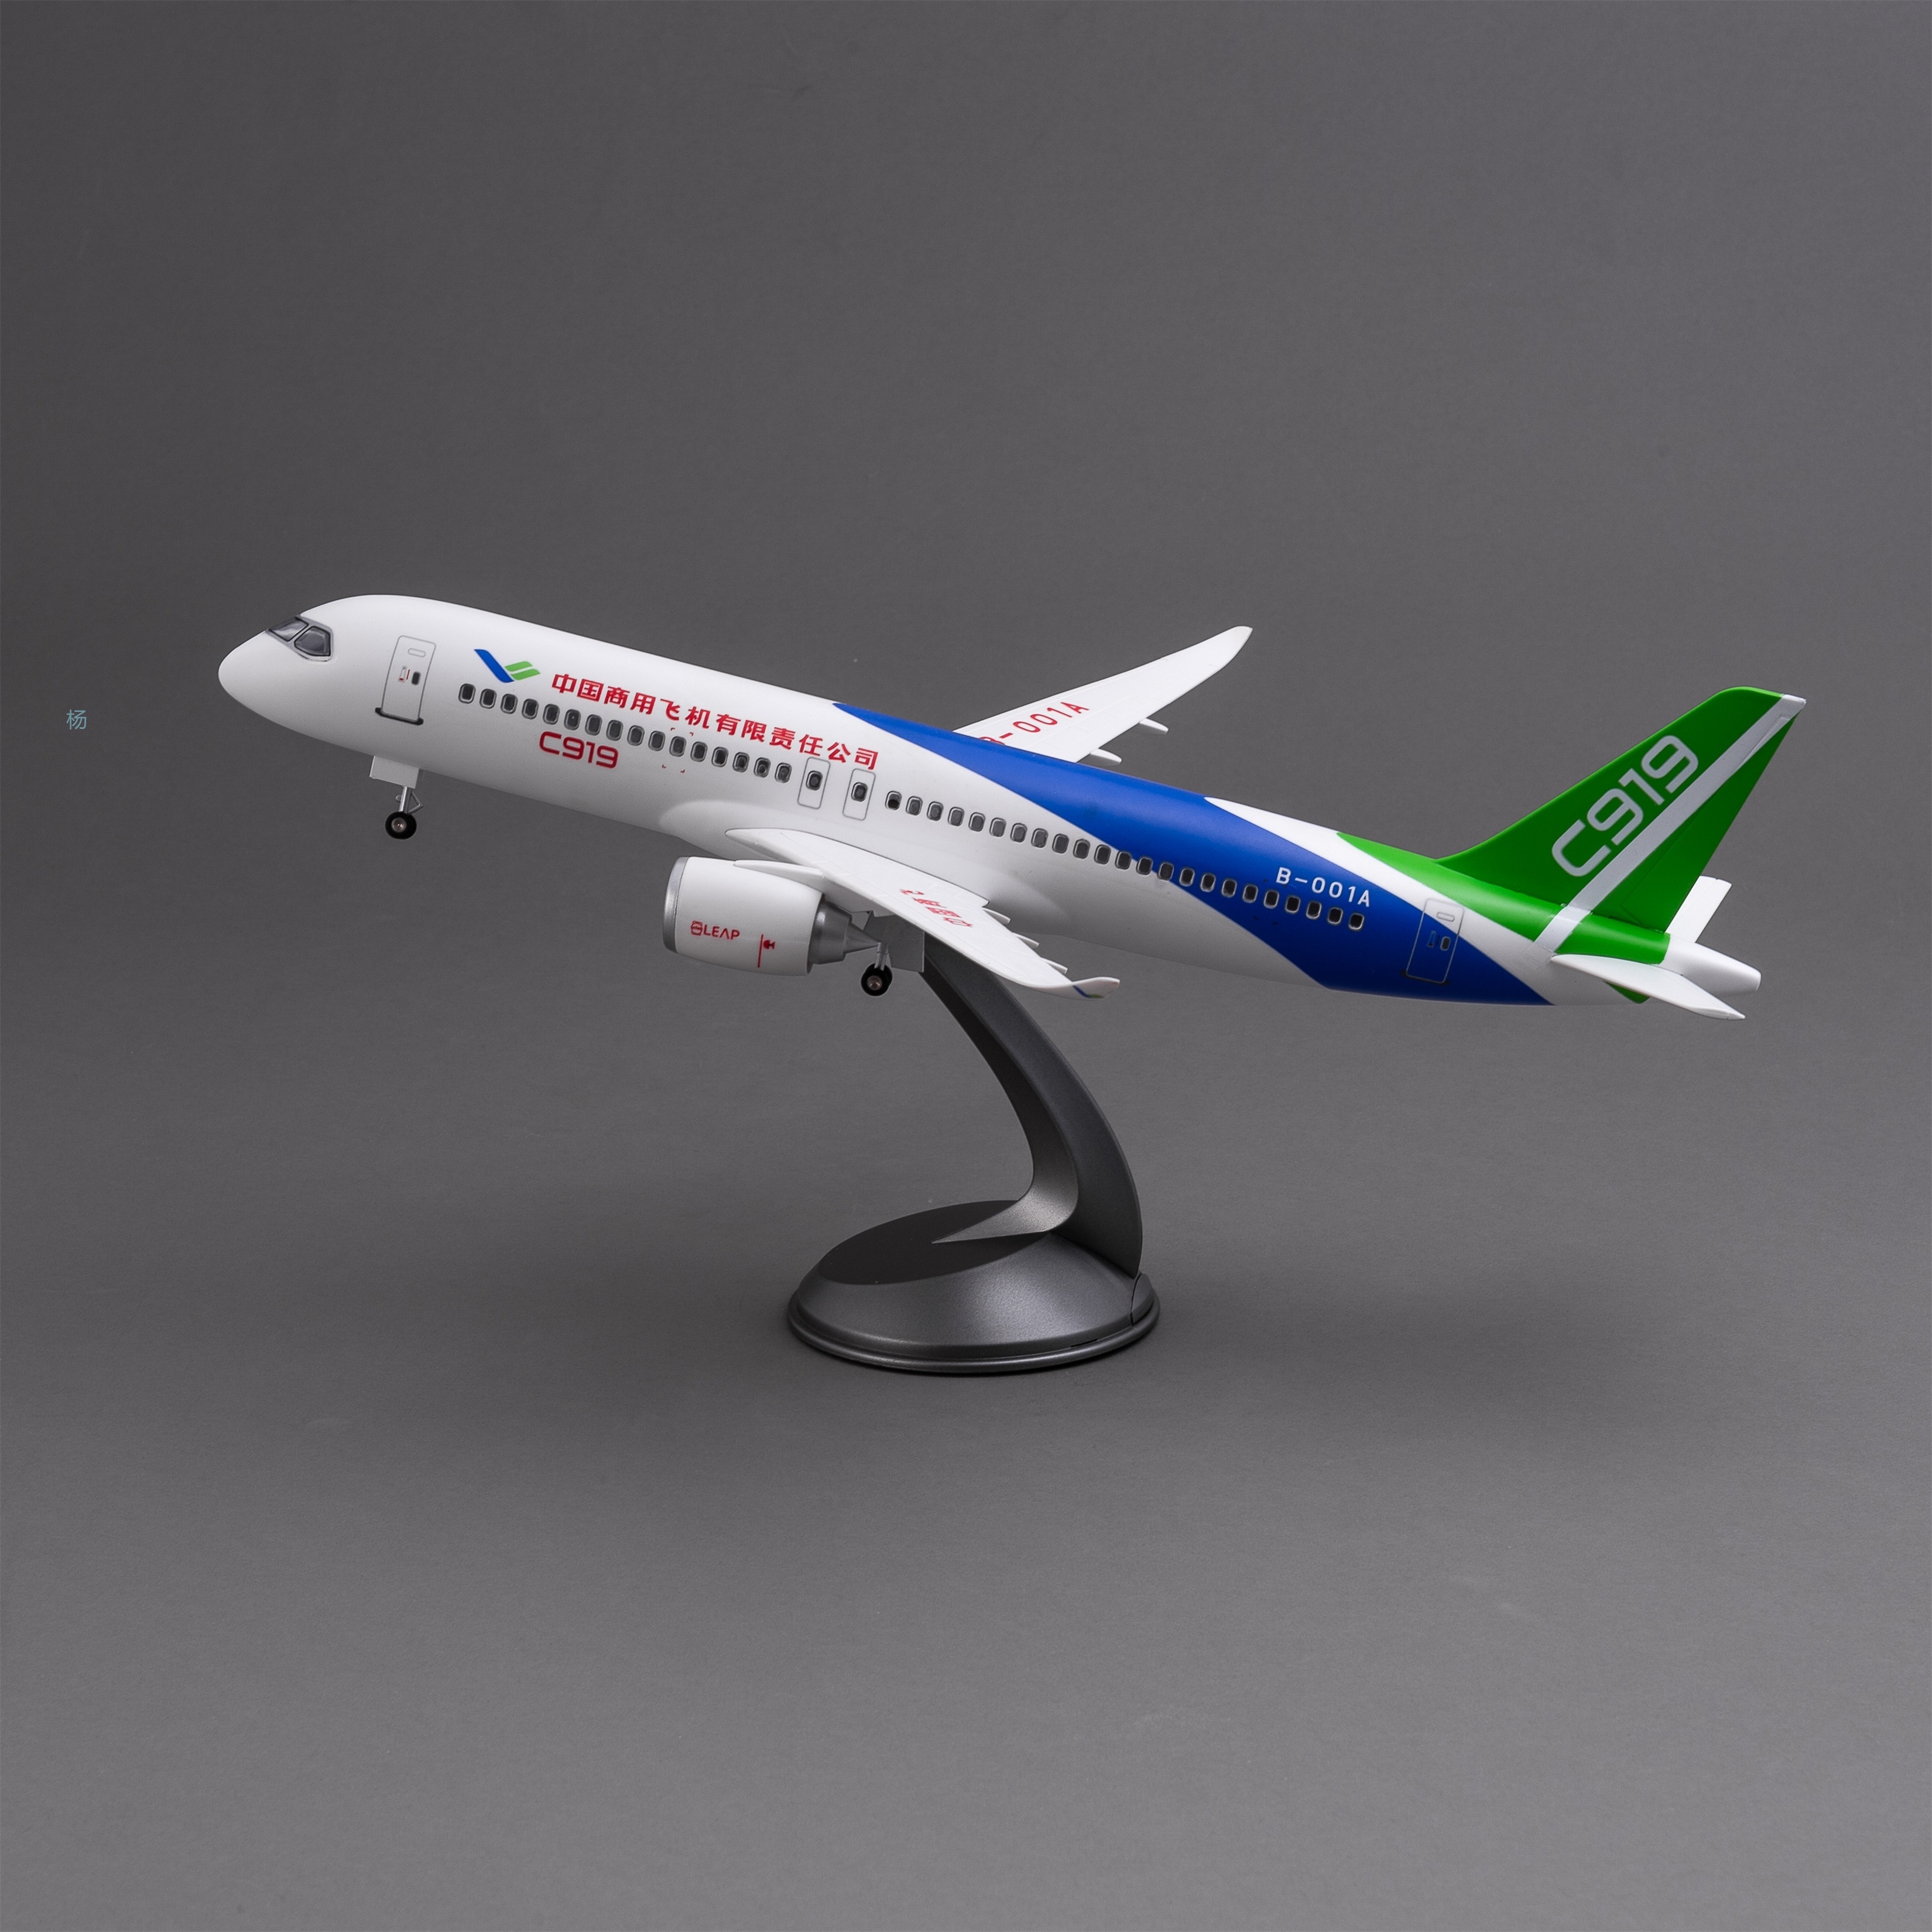 飞机模型（中国商用飞机有限责任公司C919飞机）仿真飞机模型 ABS合成强化树脂飞机模型航空飞机模型详情4